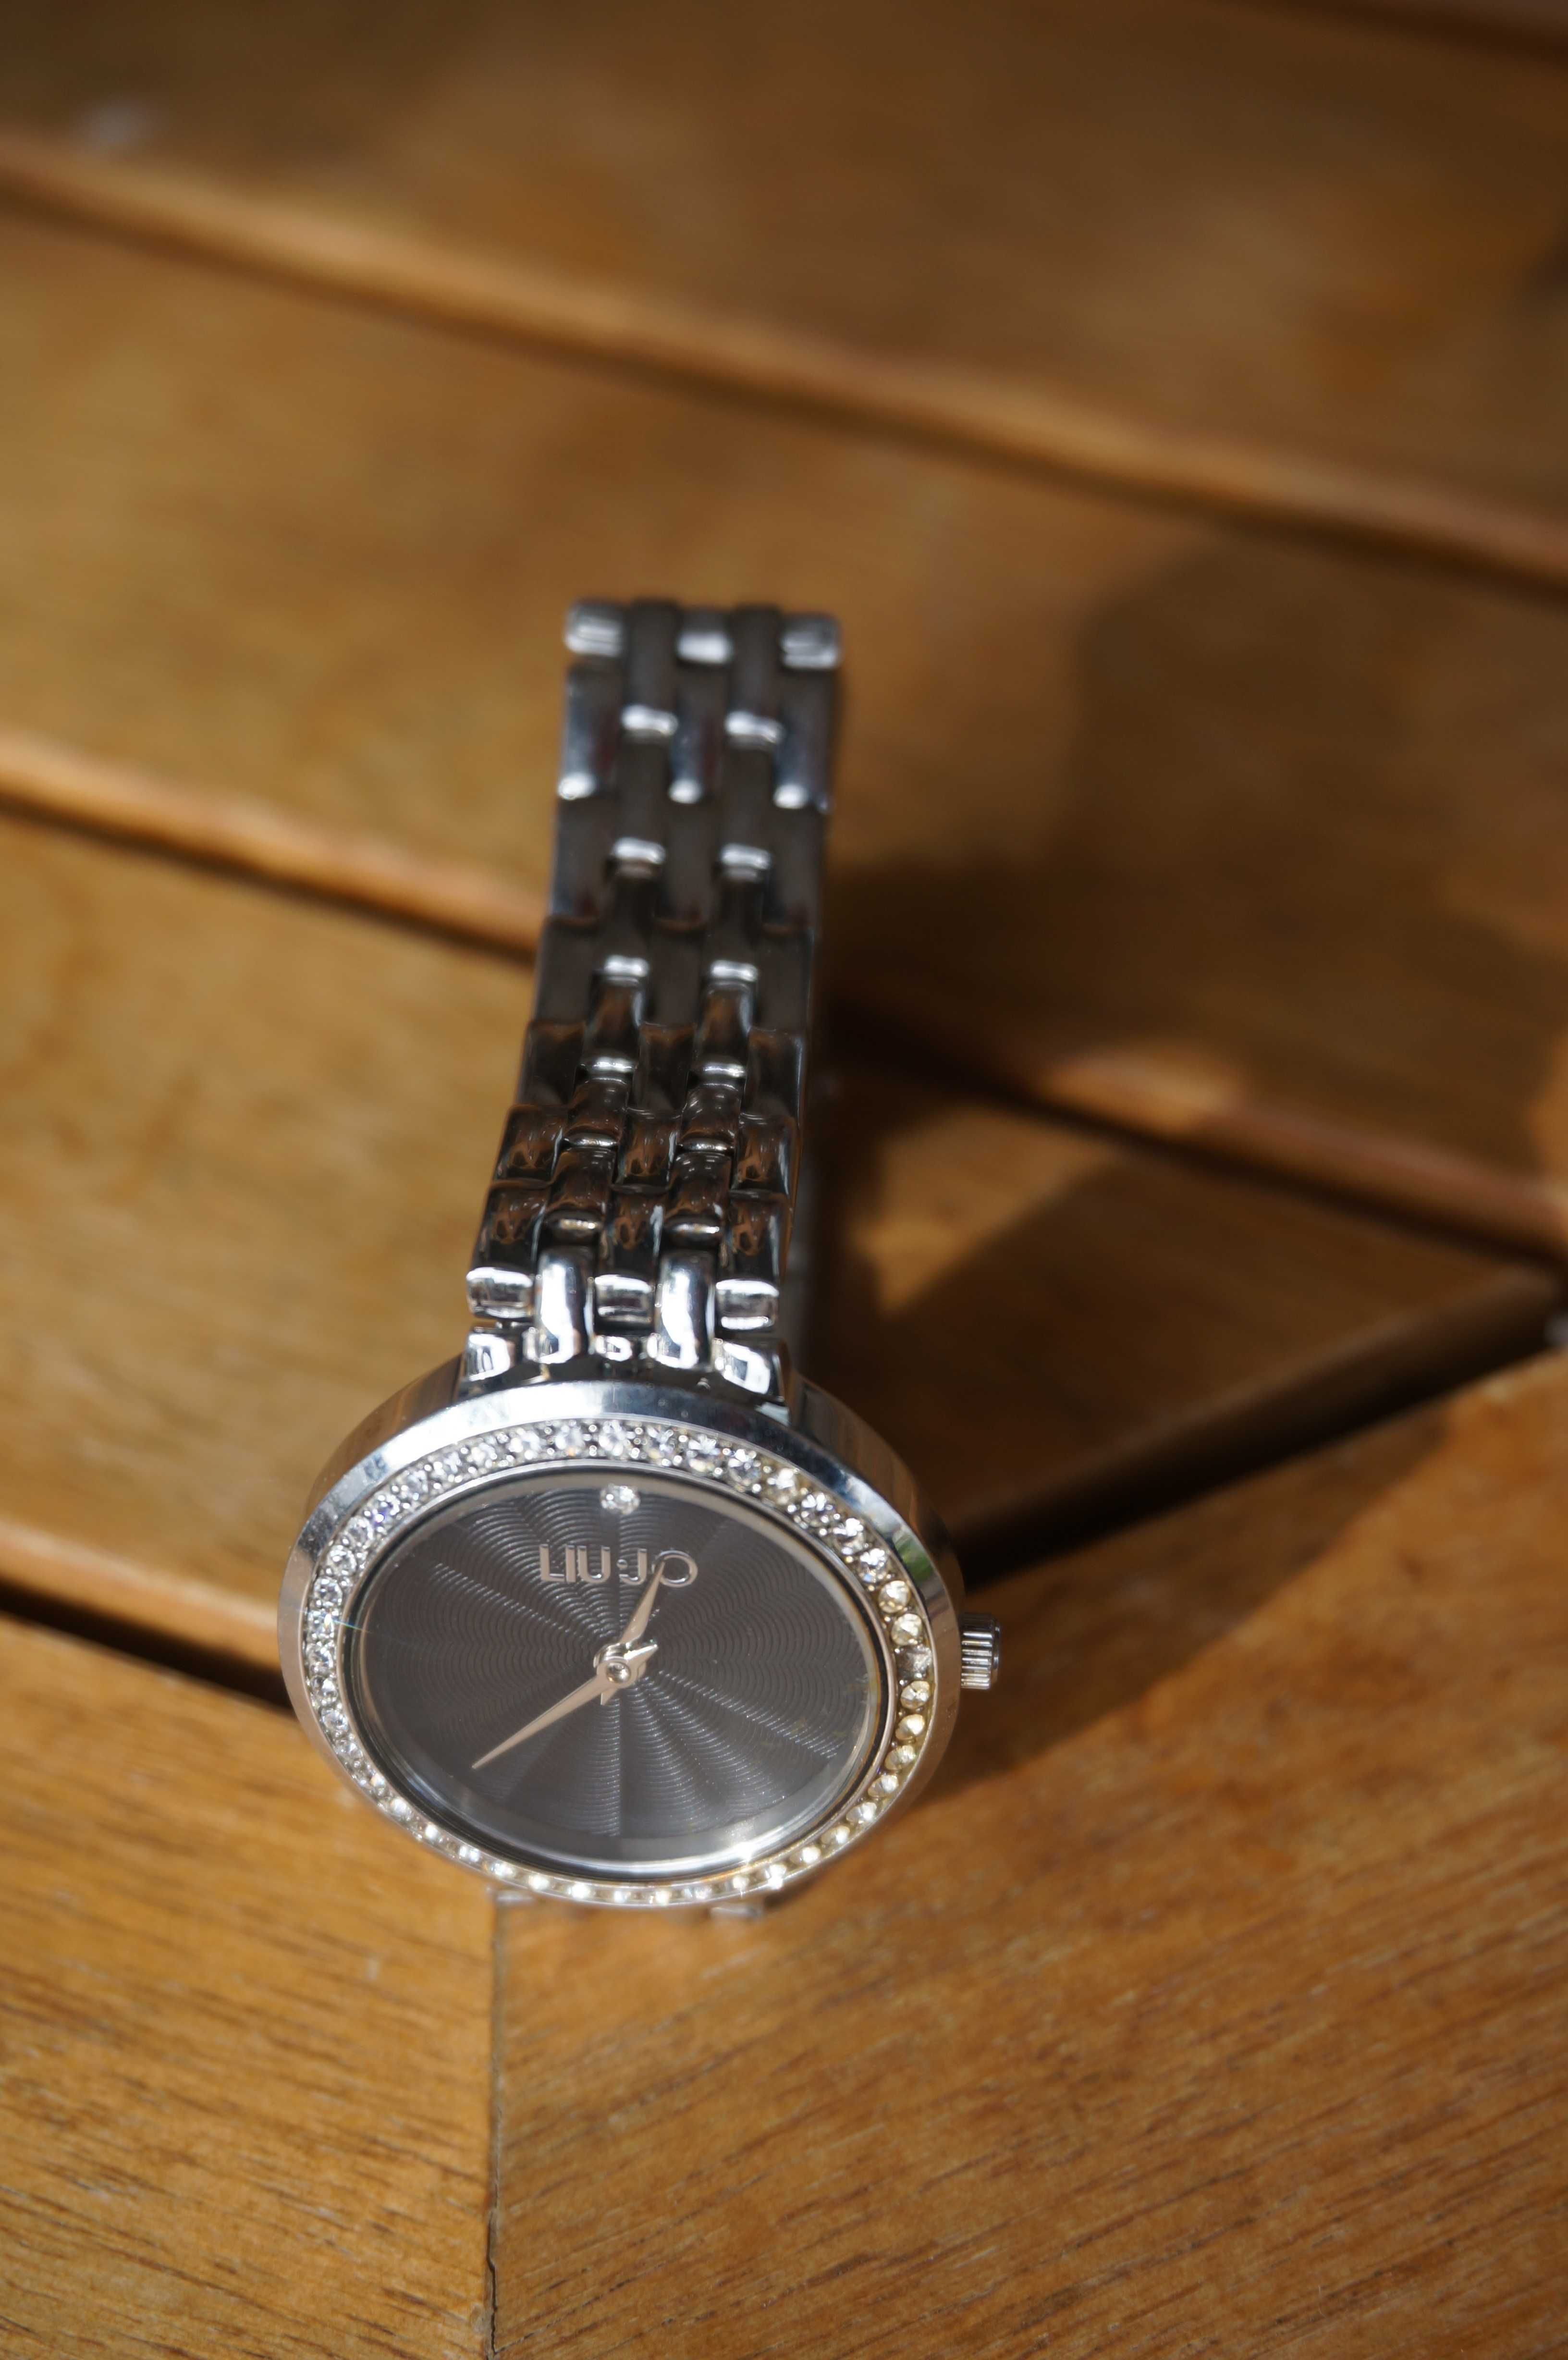 Relógio Liu Jo TLJ1600 Precius Glam steel crystals